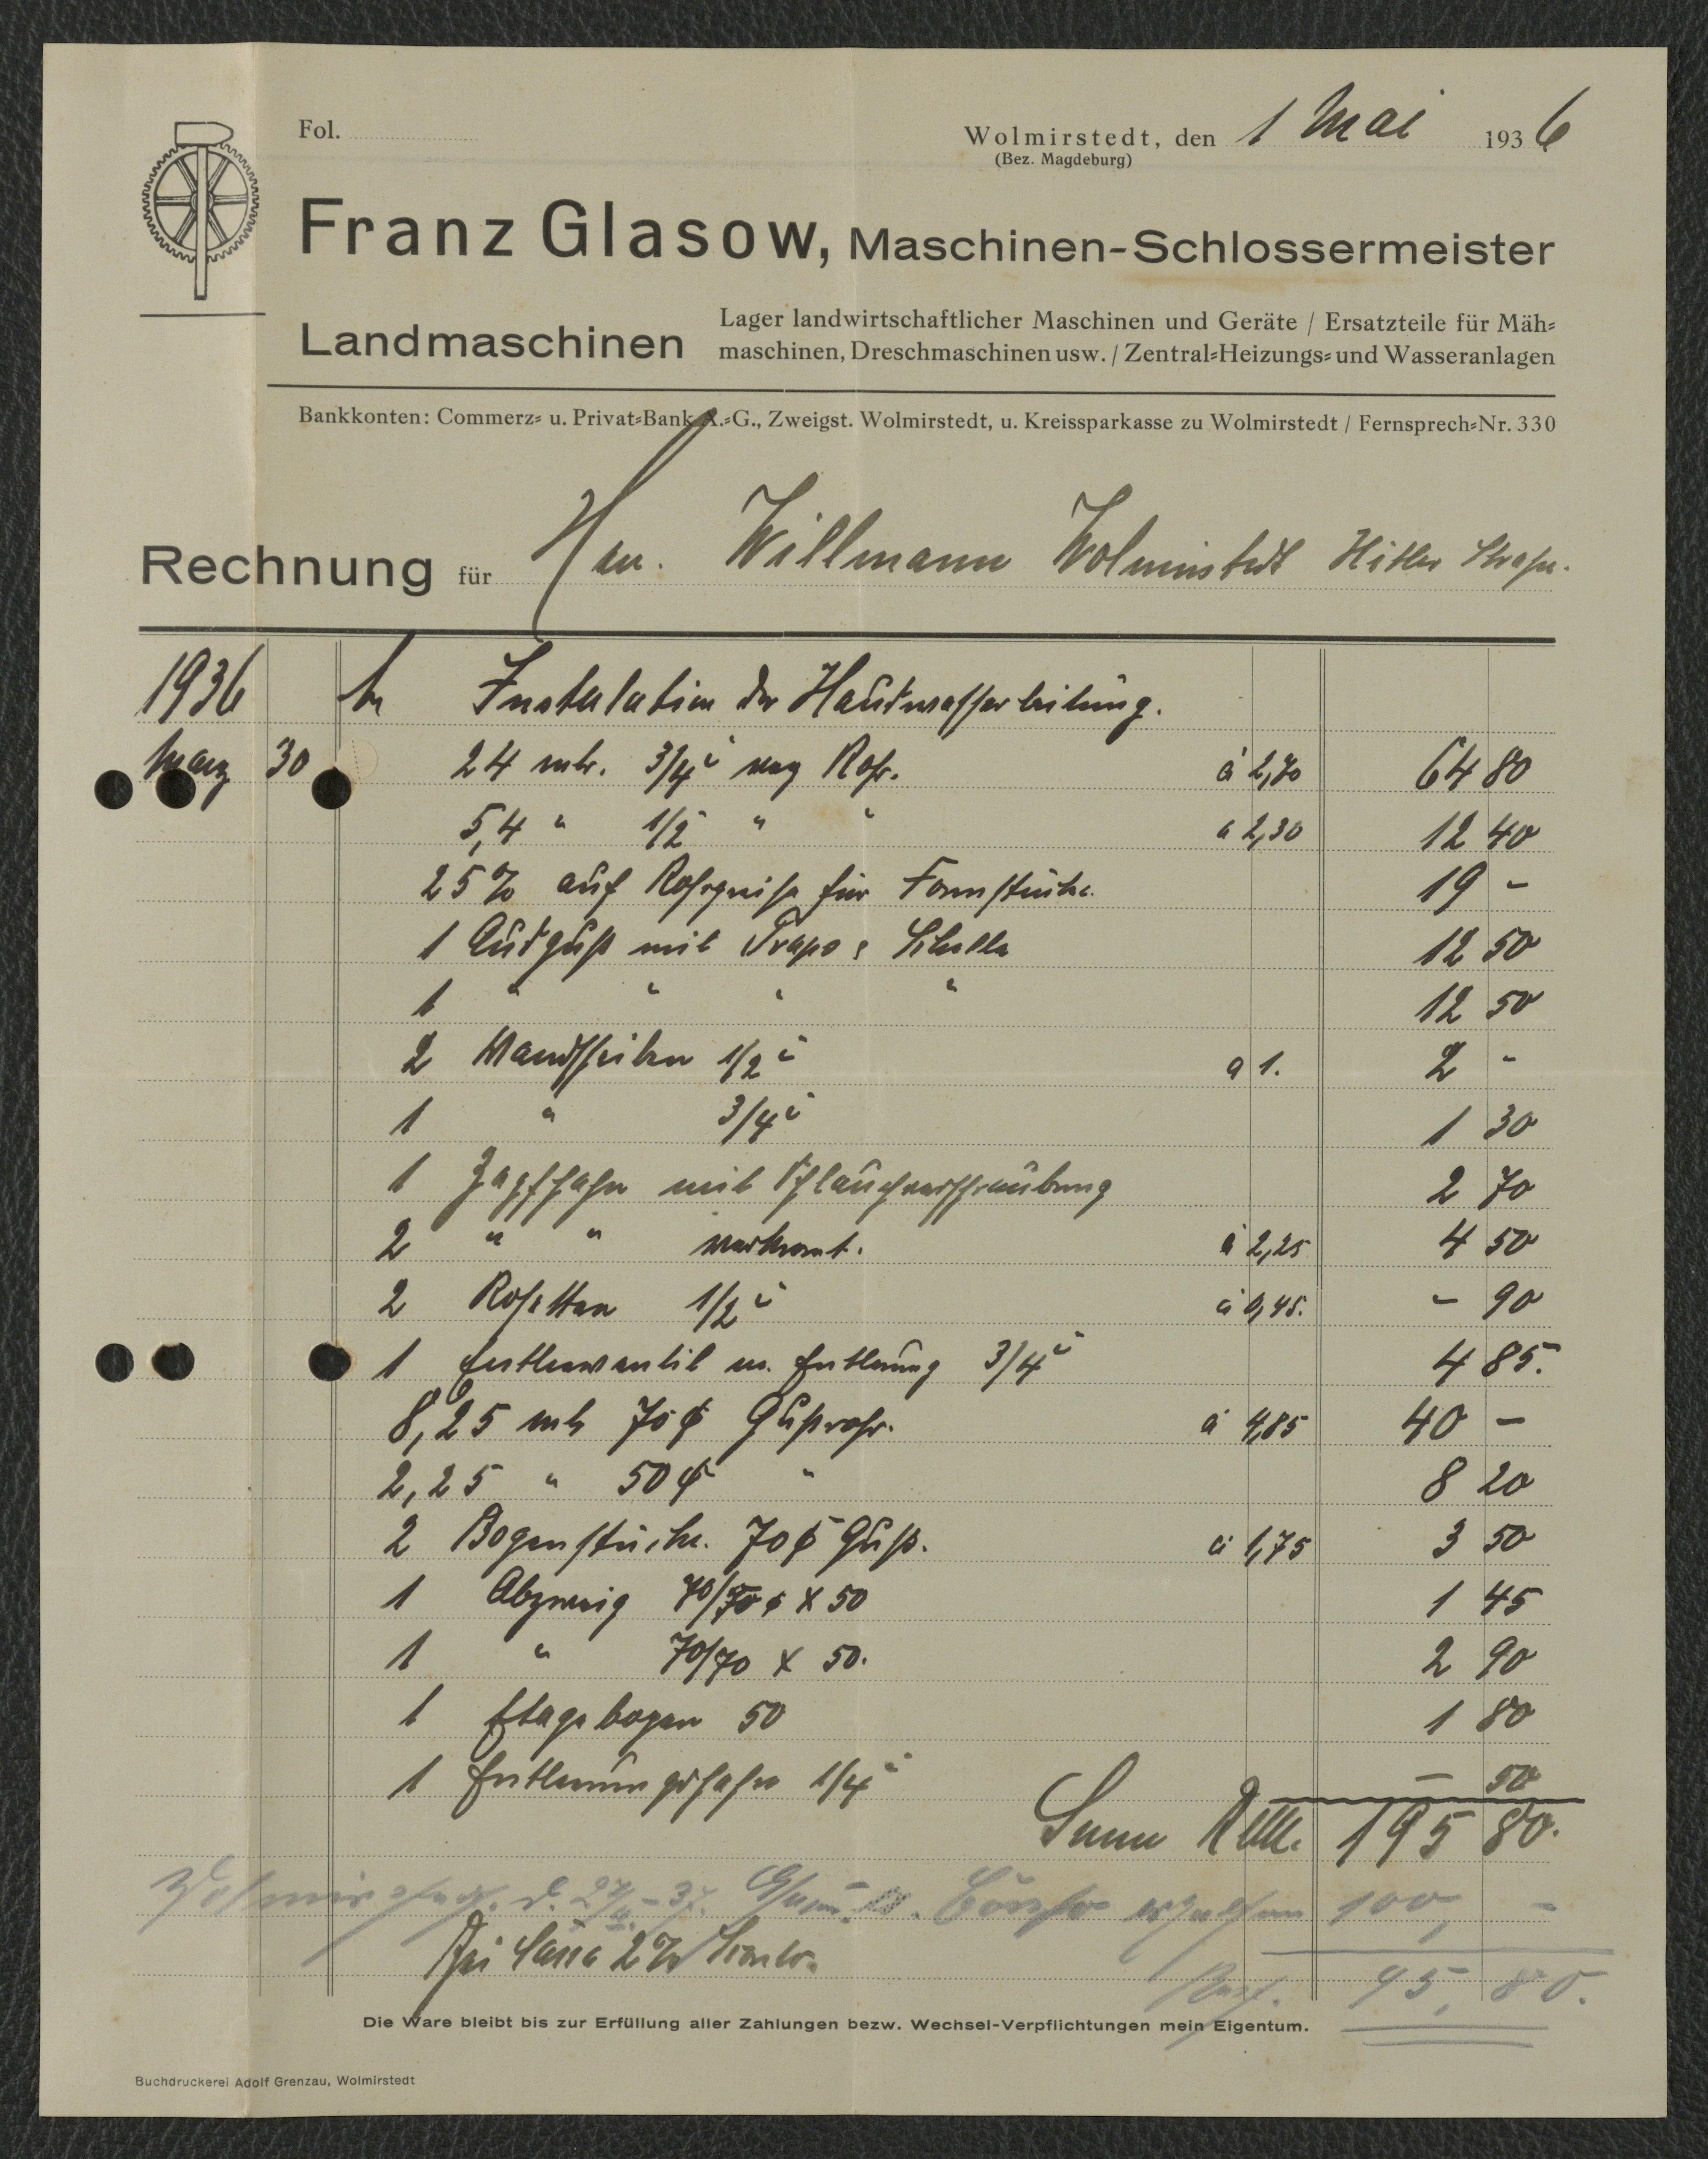 Rechnung Maschinen-Schlossermeister Franz Glasow für Willmann, Wolmirstedt vom 01.05.1936 (Museum Wolmirstedt RR-F)